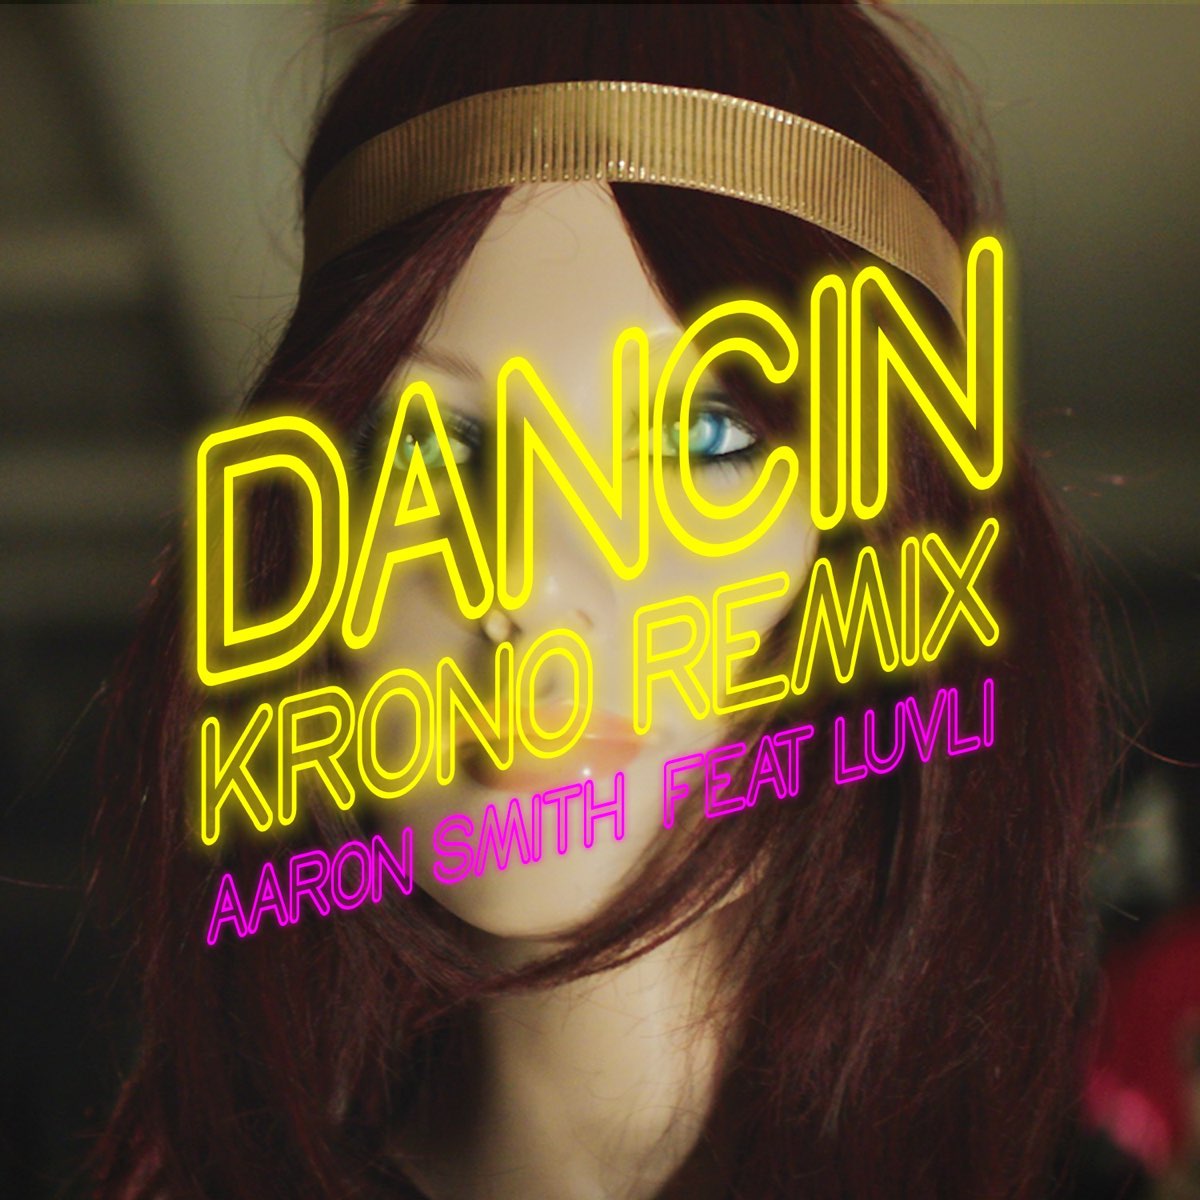 Песню танцуй танцуй данс данс. Aaron Smith, Luvli Dancin. Aaron Smith Dancin Luvli Krono Remix. Dancin Krono Remix.